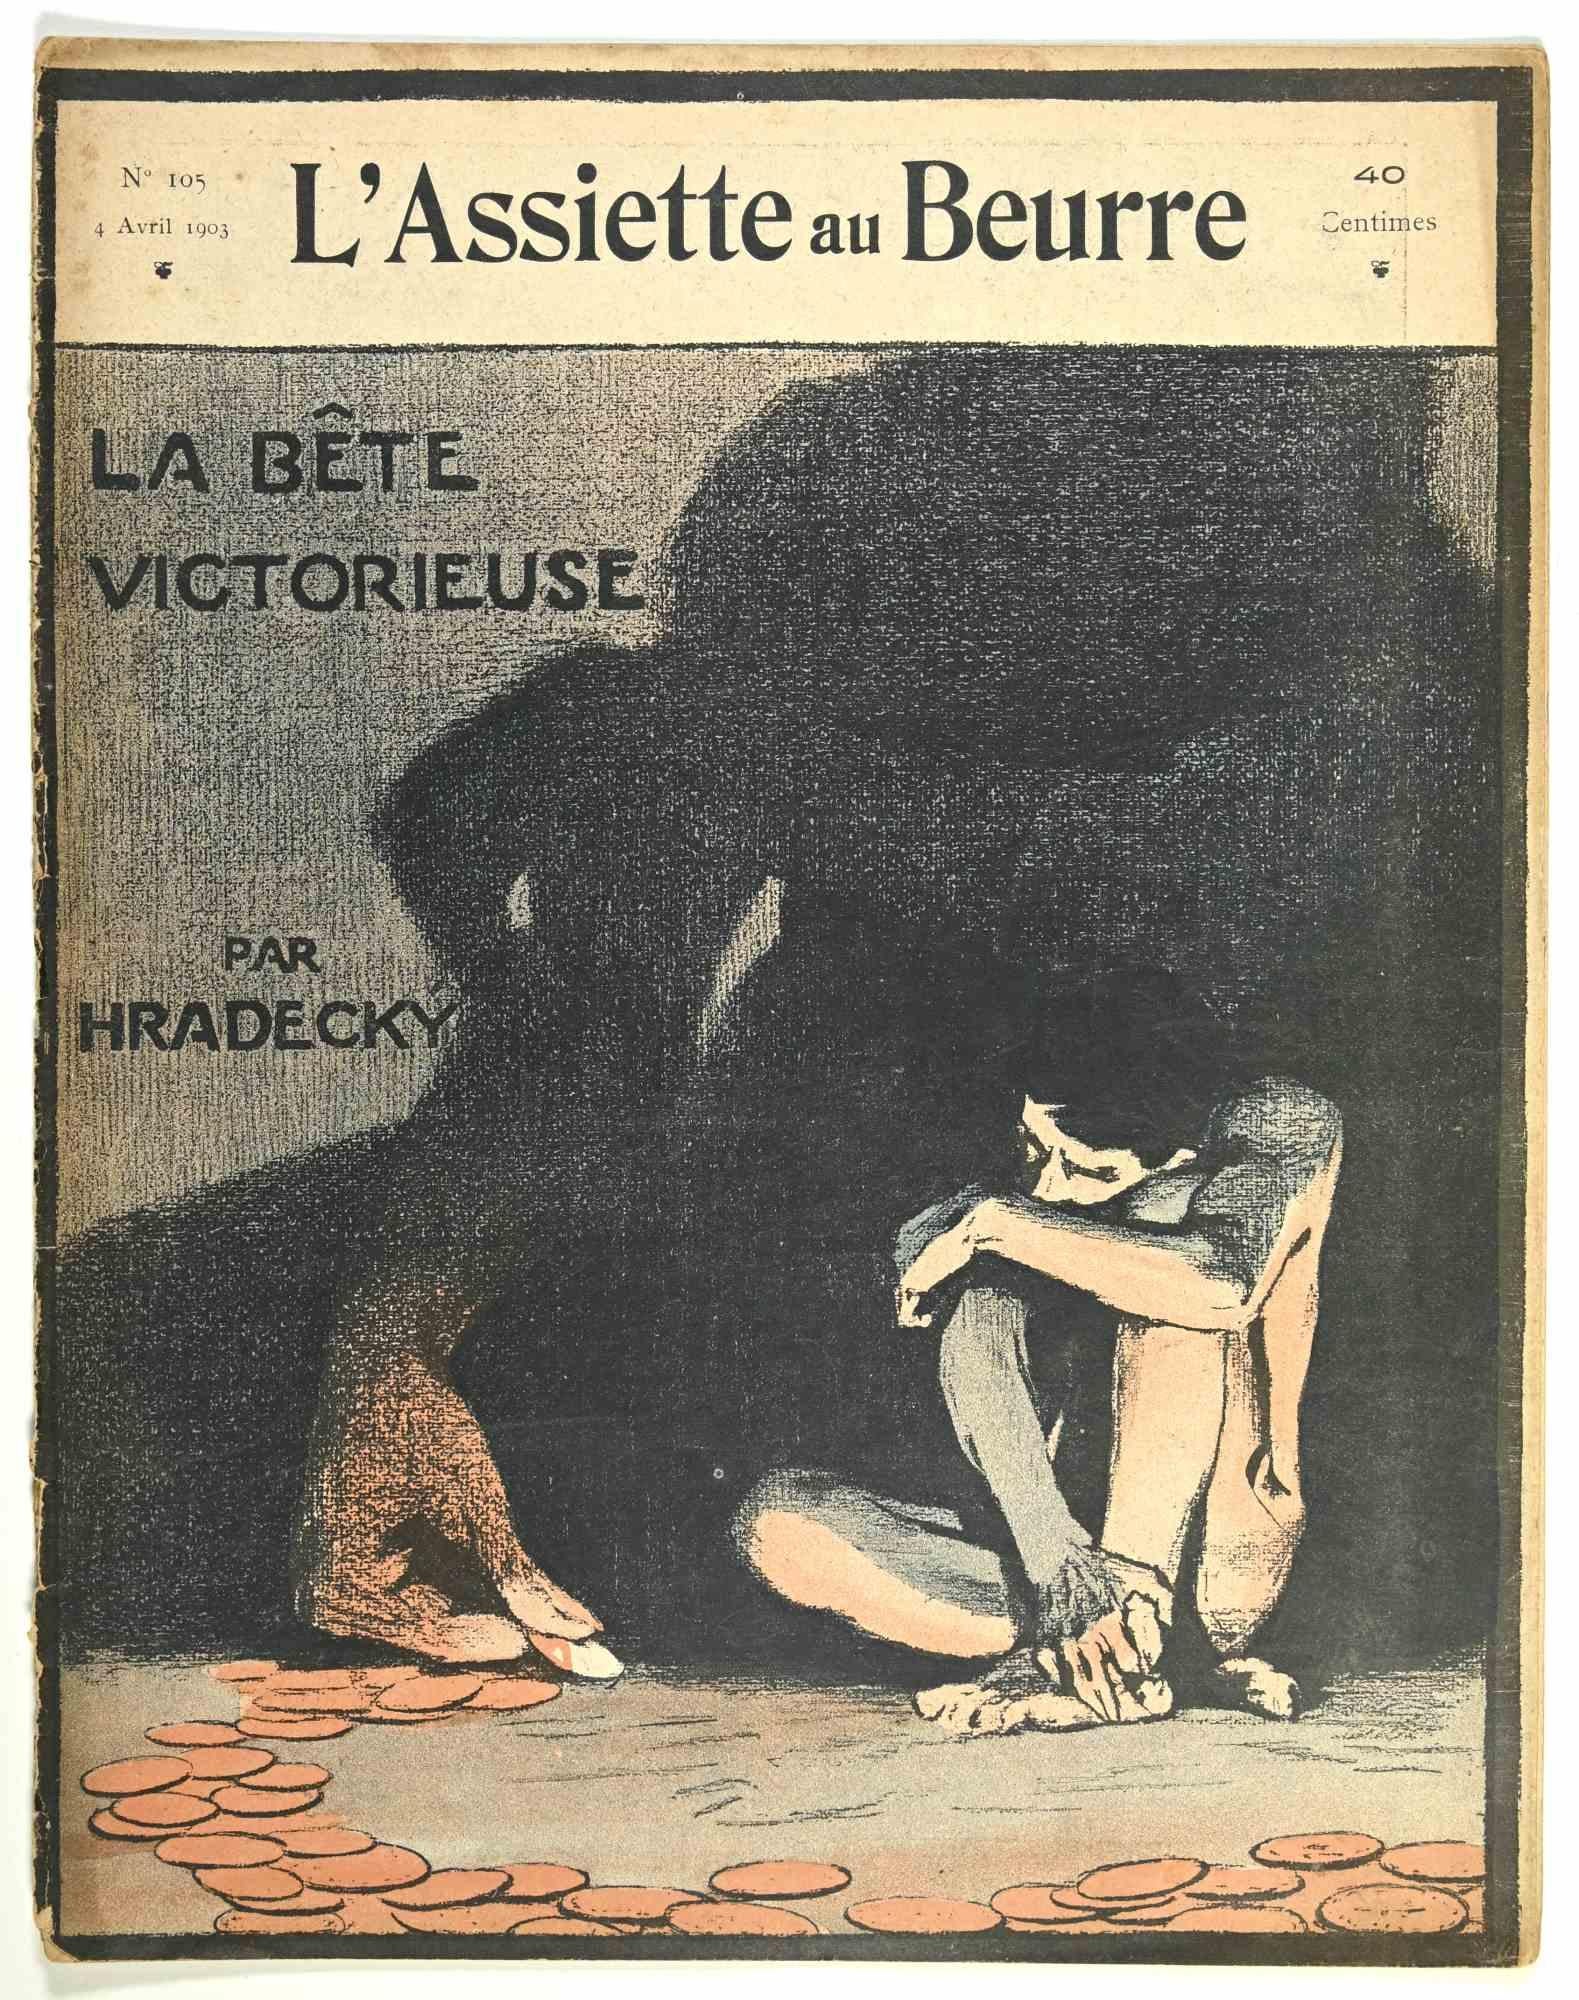 Hermann Paul Figurative Print - L'Assiette au Beurre  - Vintage Comic Magazine - 1903